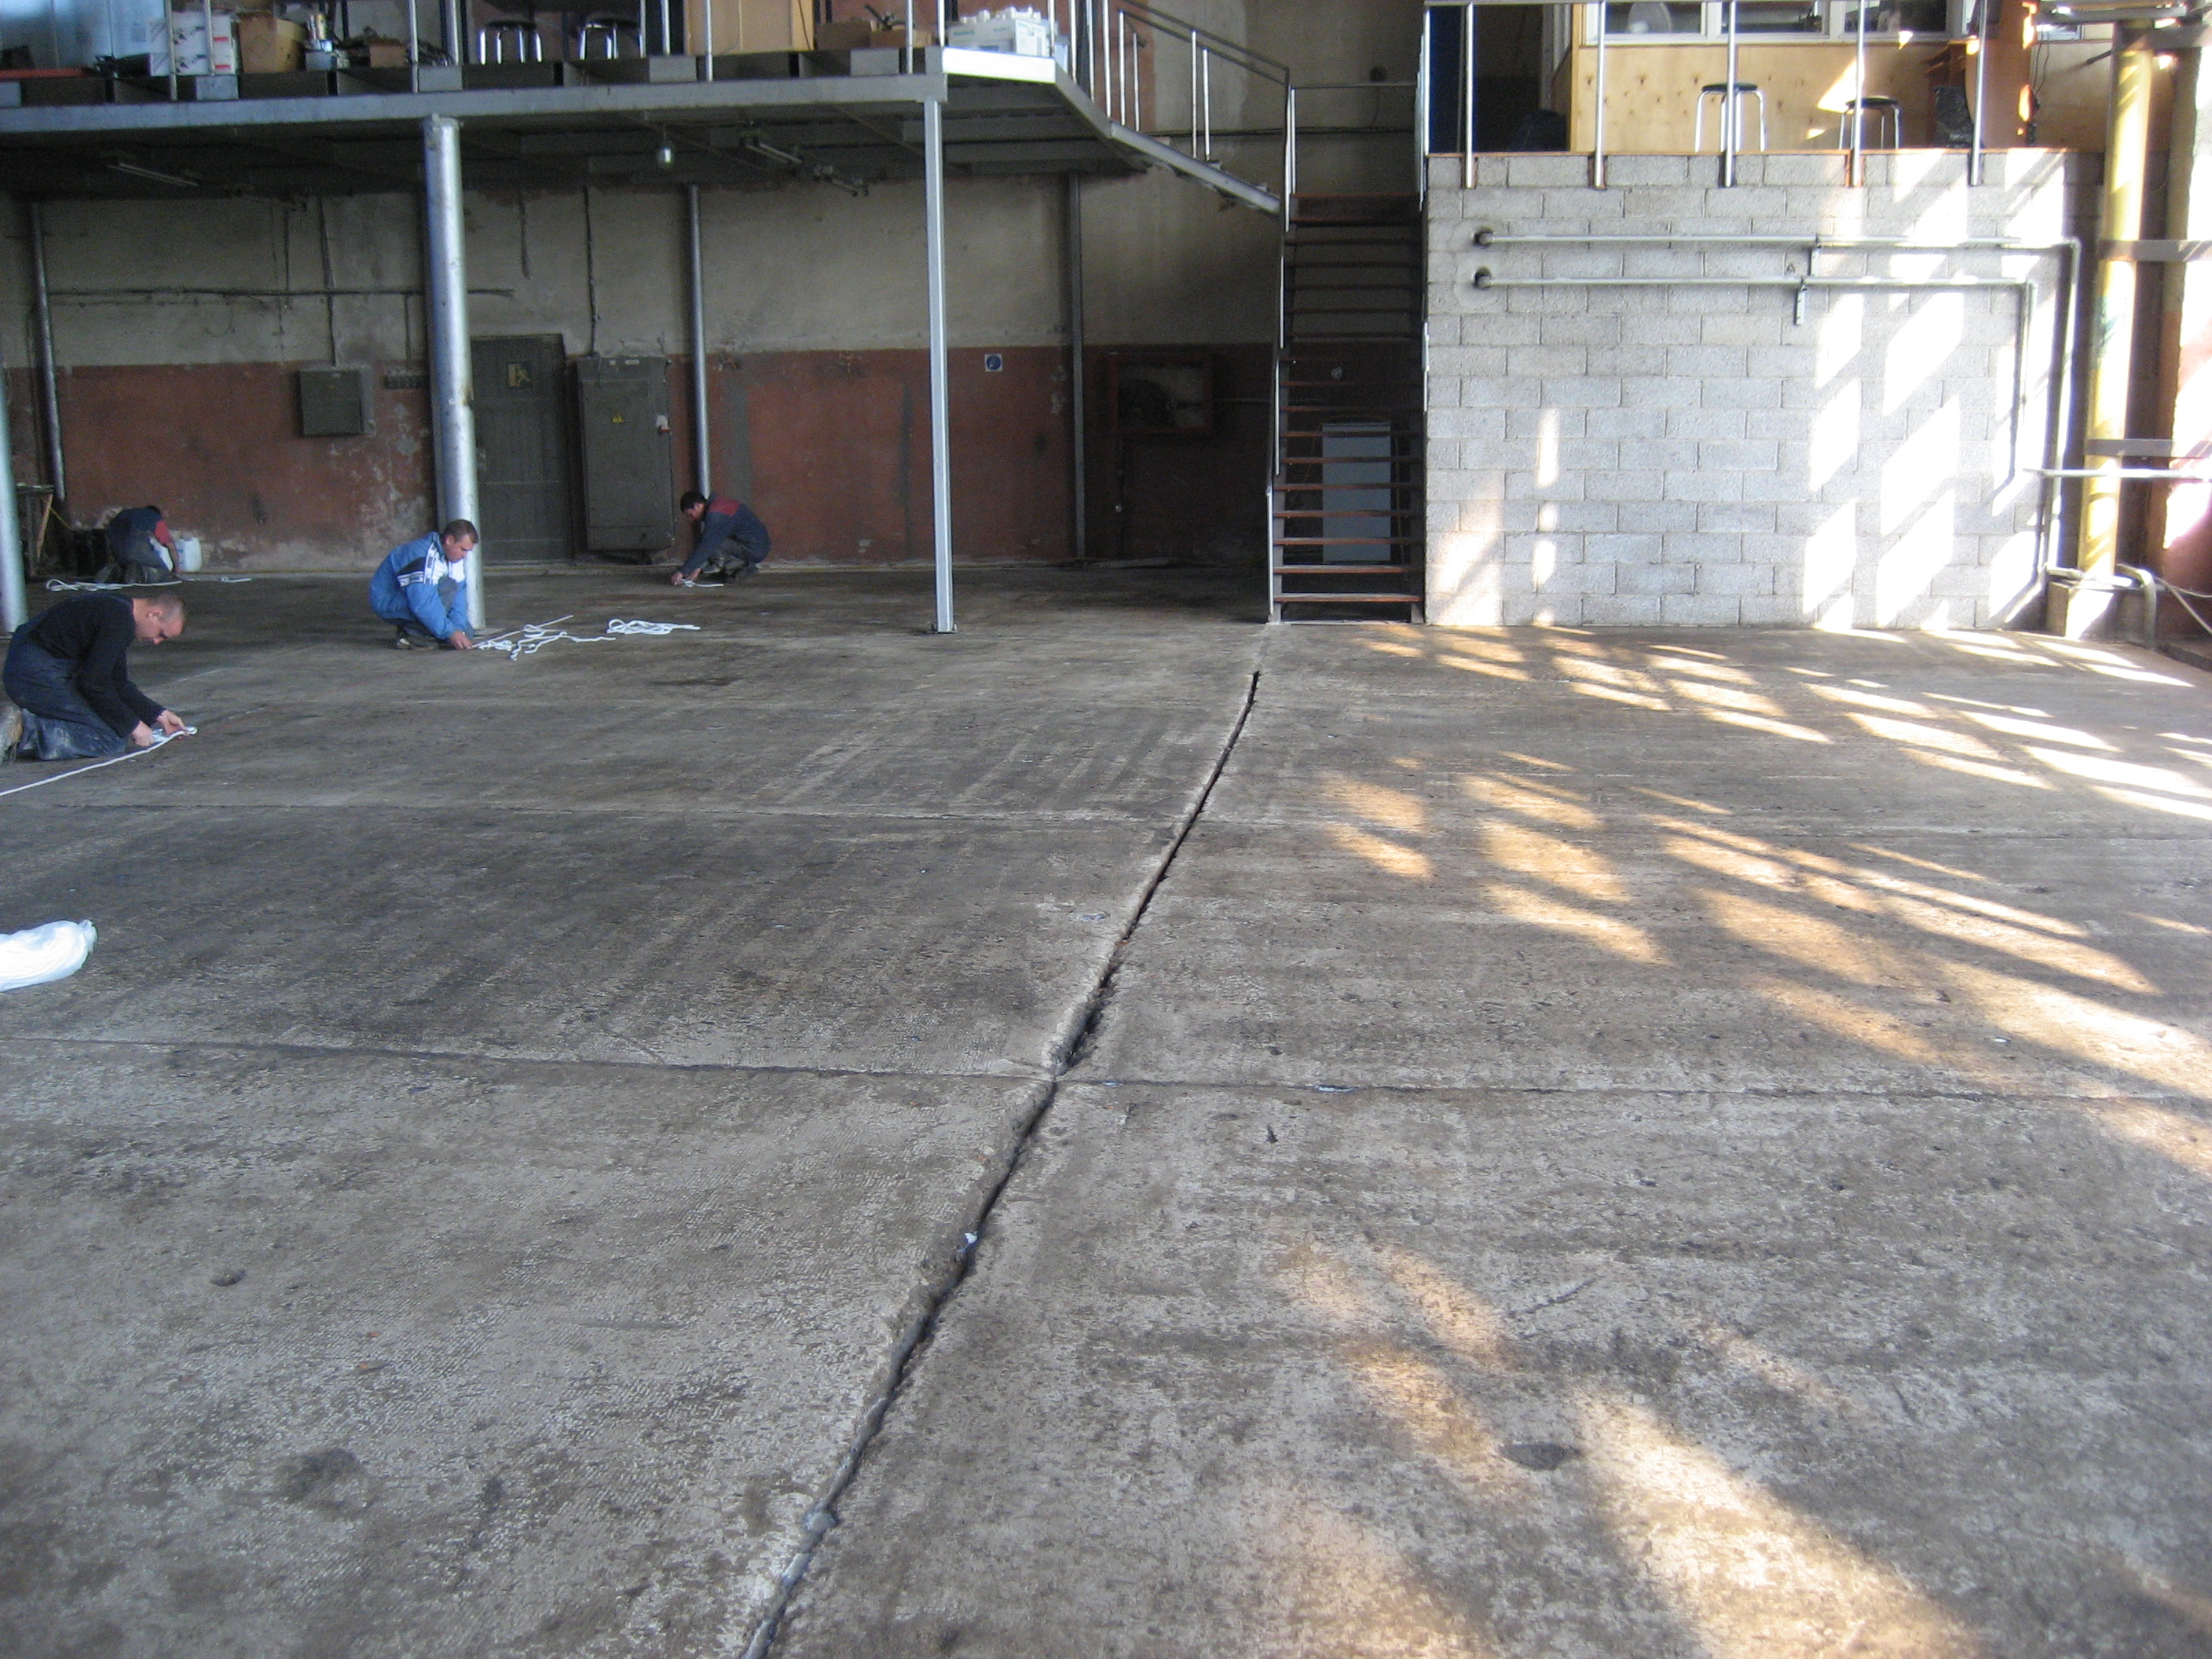 Savaime išsilyginantys cementiai misiniai, grindų danga, inovacinė drindų danga, pramoninė grindų danga, savaime išsilyginanti mišiniai, dangą betonine, pramoninė grindų mišinys, liejamos grindys, mišiniai cemento pagrindu, plonasluoksnė pramoninė grindys, grindų sistema, betoninių grindų problemos, grindų apsauga, chemini apsauga, grindų renovacija, grindų remontas, betoninių grindų remontas, spalvotas grindys, polimerines dangos, greitai džiūstantis grindys, remontinis mišiniai, greitai liejamas, lanksti grindų sistema, liejama spalvota grindų danga, cheminė premonė betonui, betono apsauga, inovacine grindų danga,3D danga, dekoratyvine danga, loft danga, grindu renovacija.